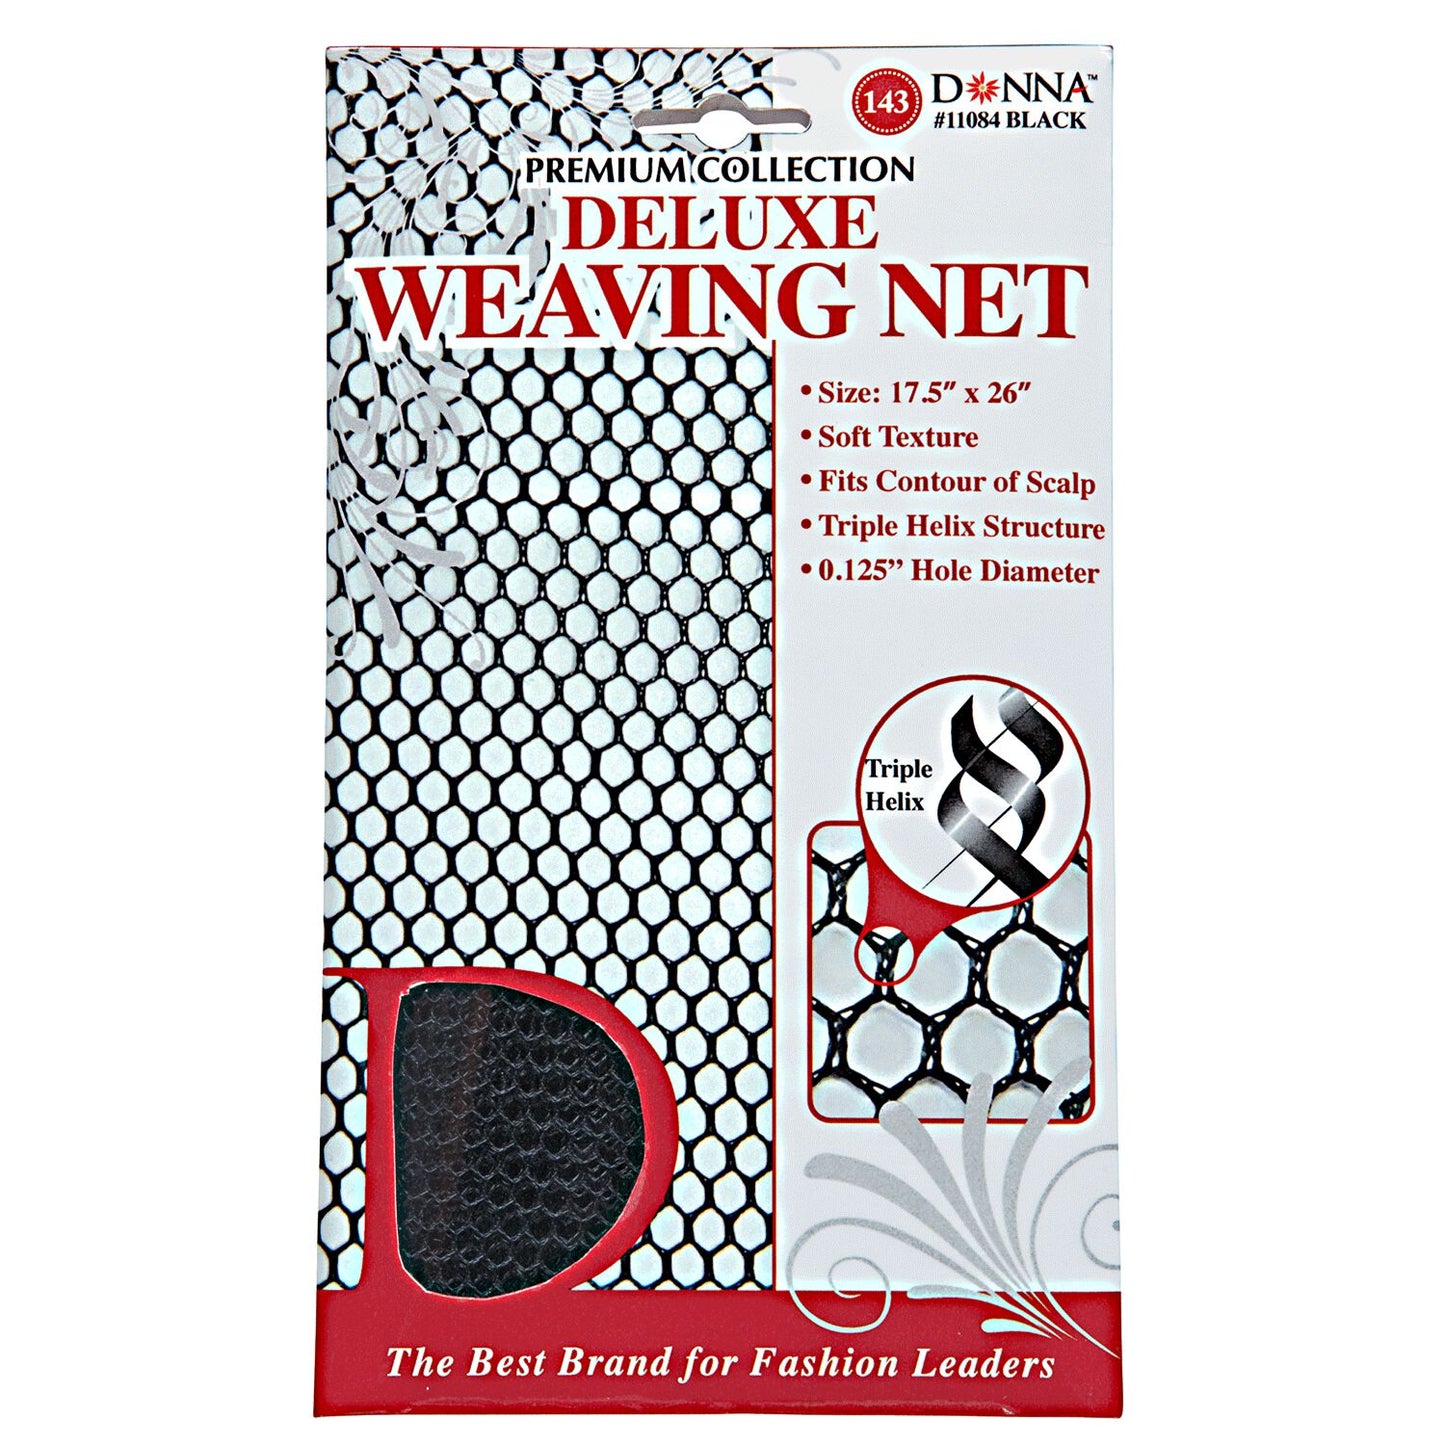 Donna Black Deluxe Weaving Net